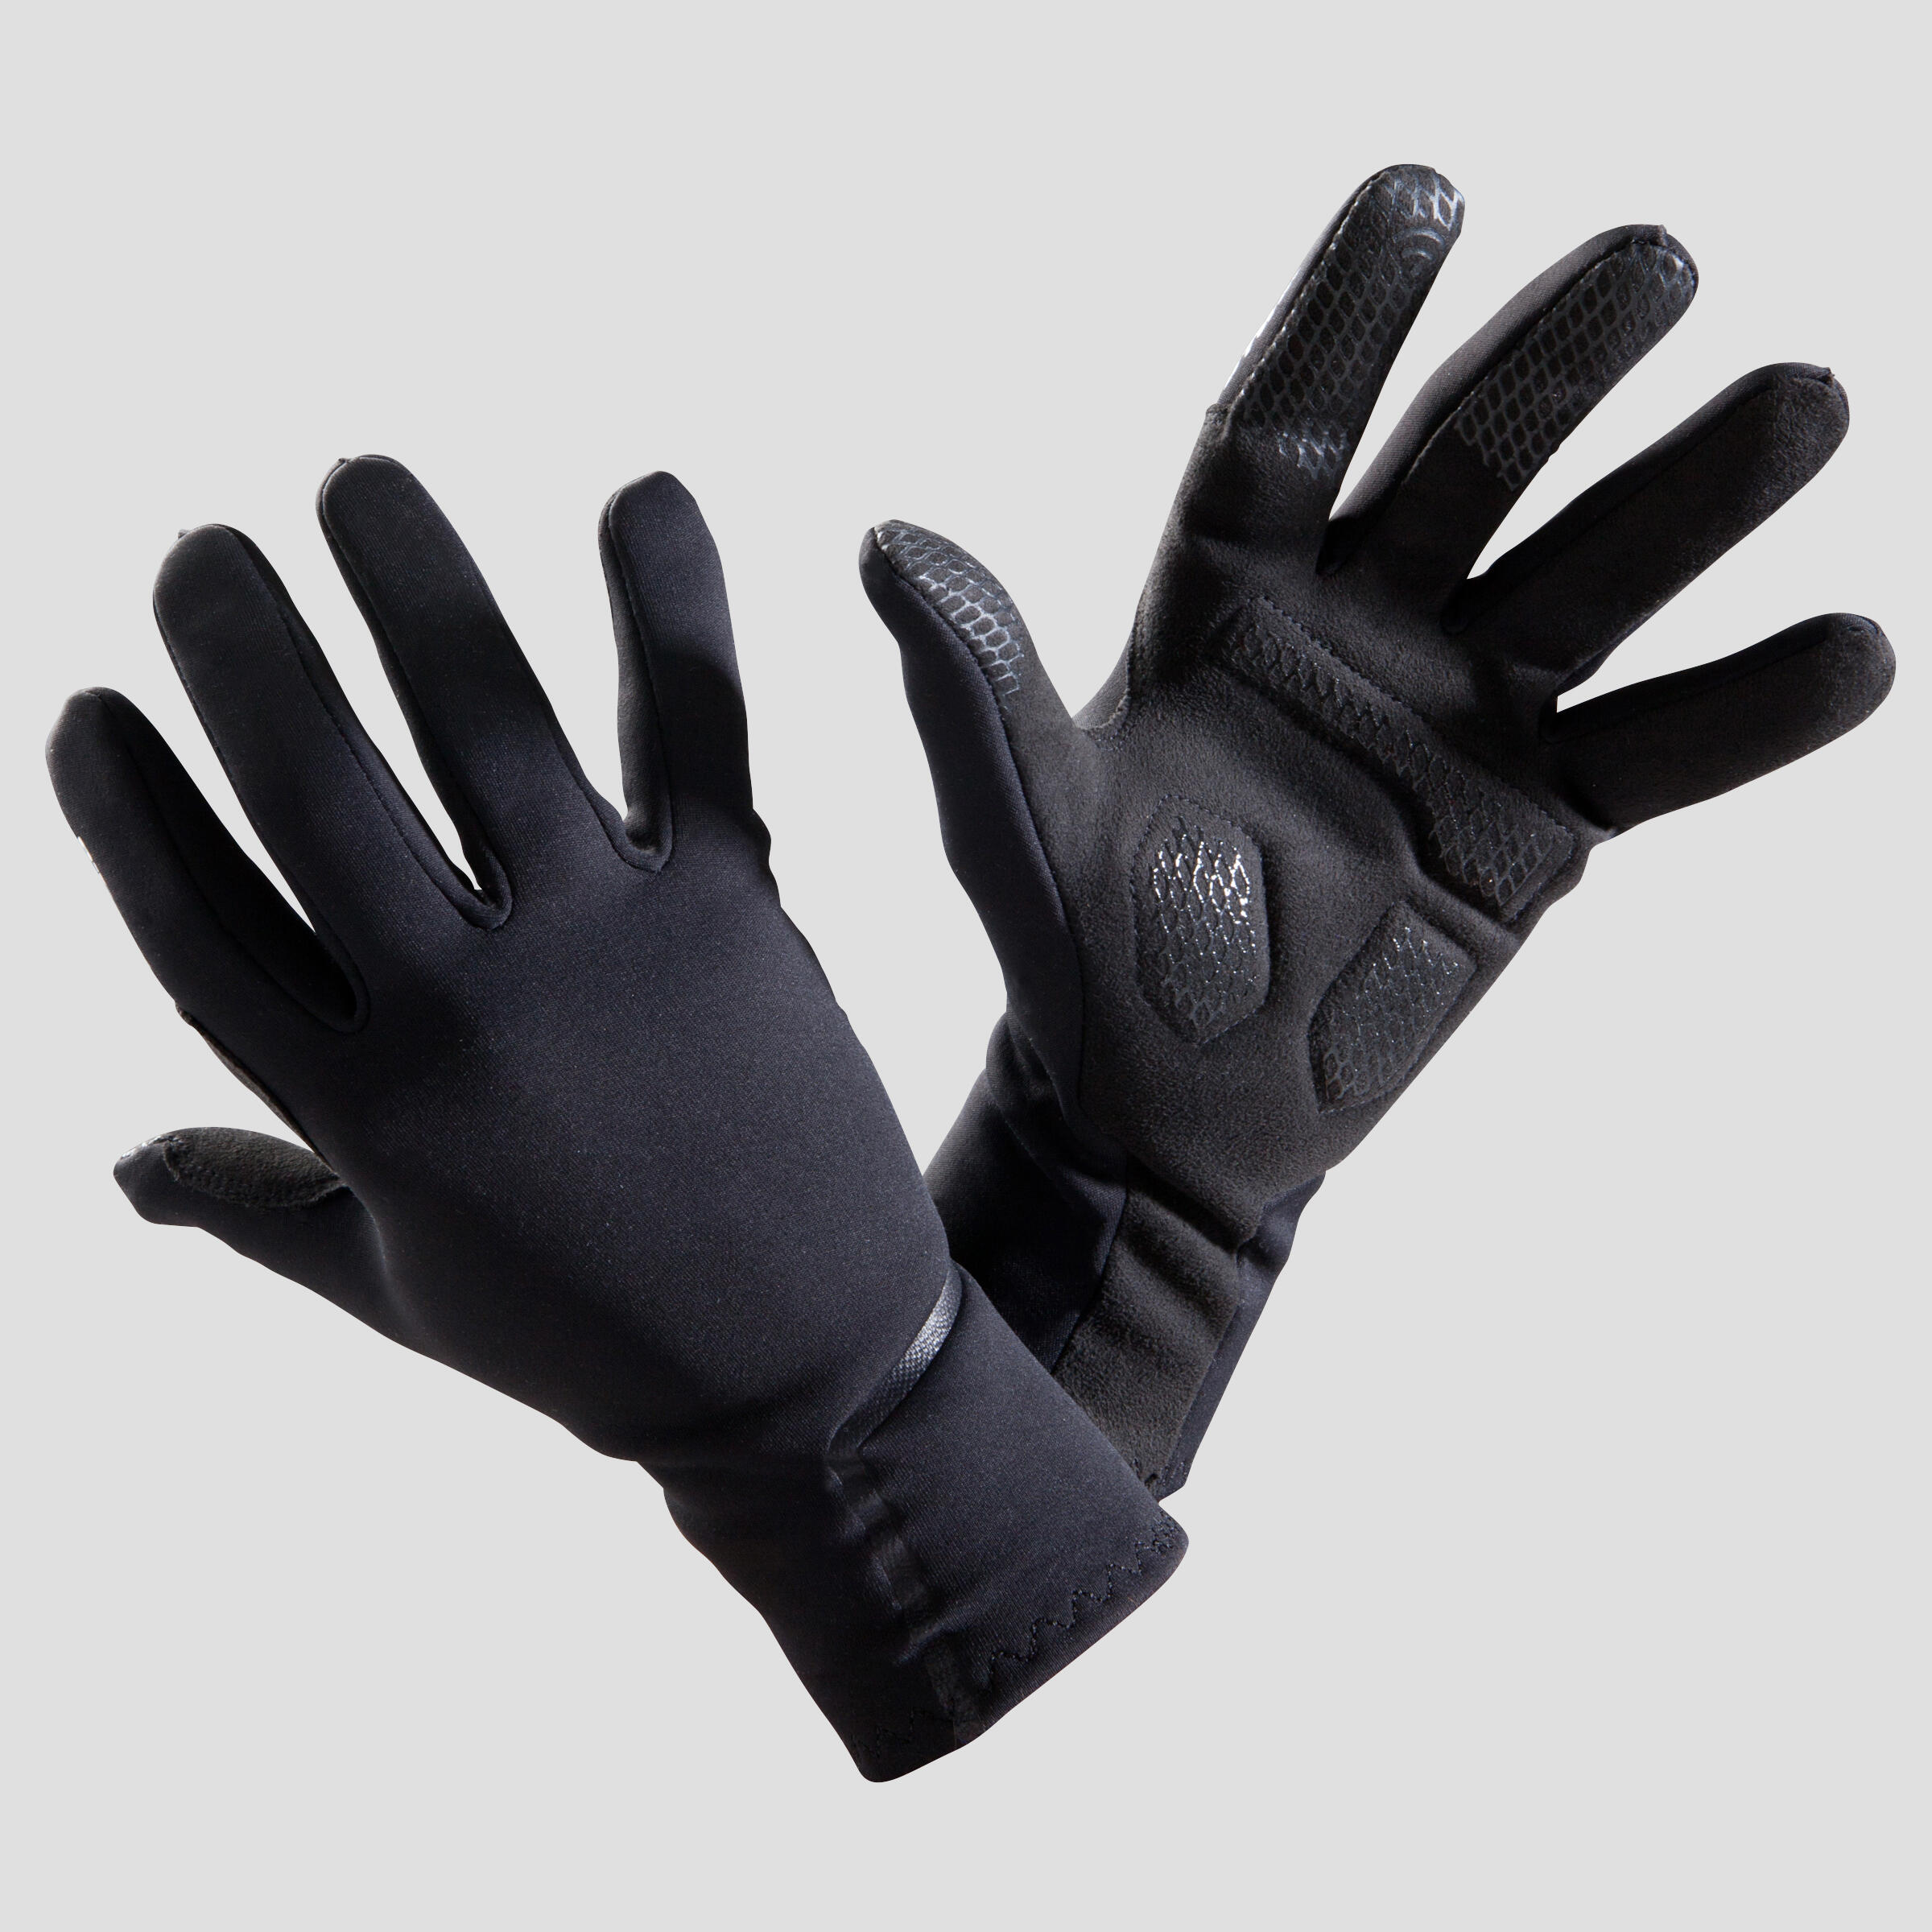 btwin 500 gloves